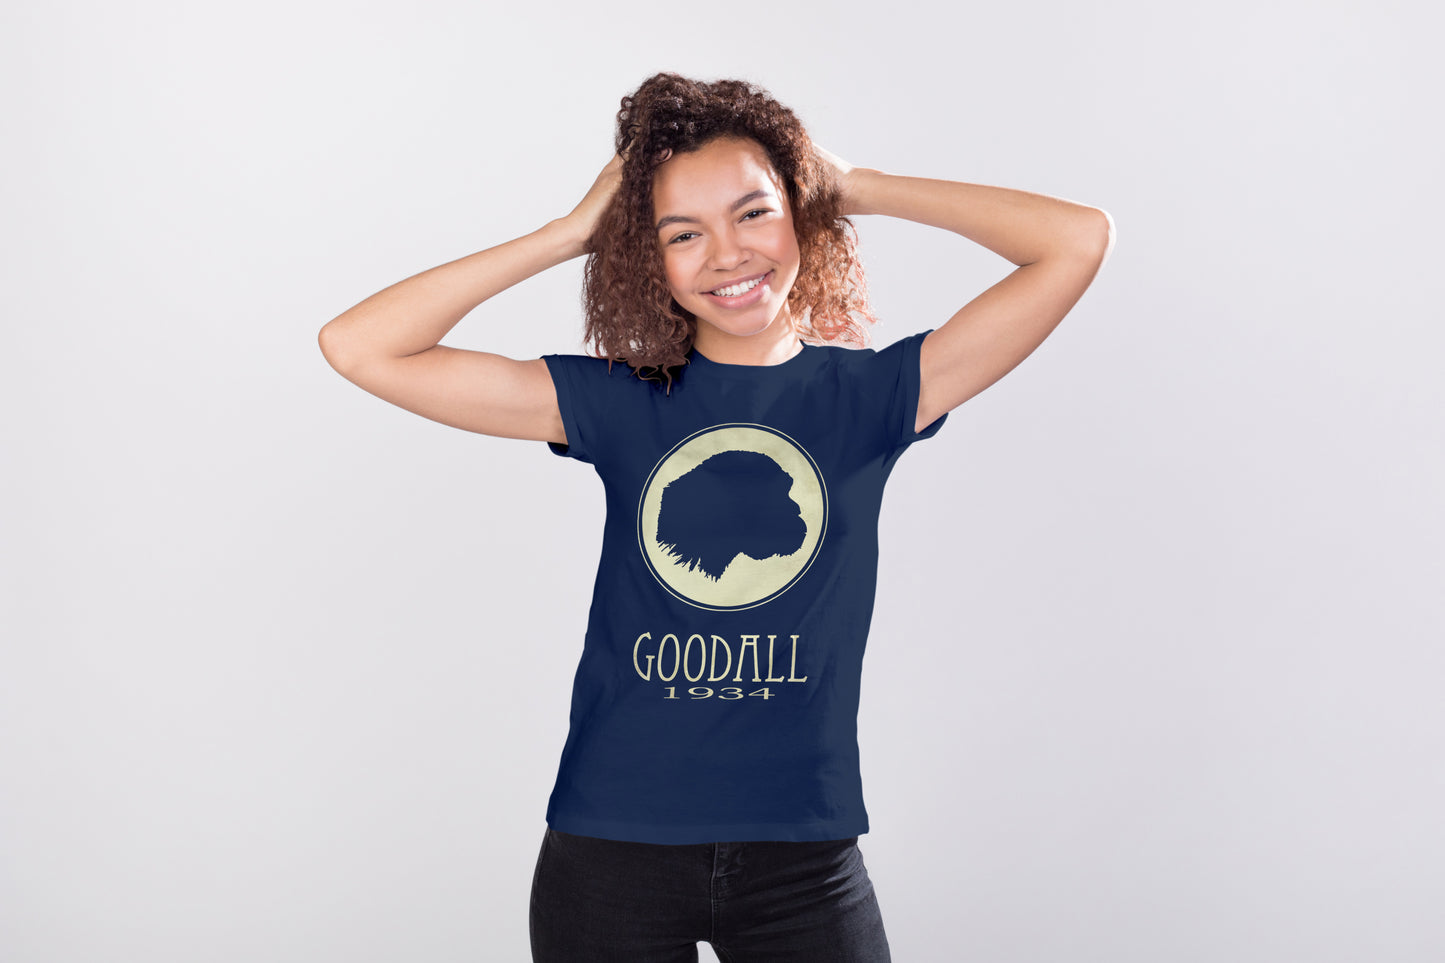 Goodall Zoology T-shirt, Jane Goodall Chimpanzee